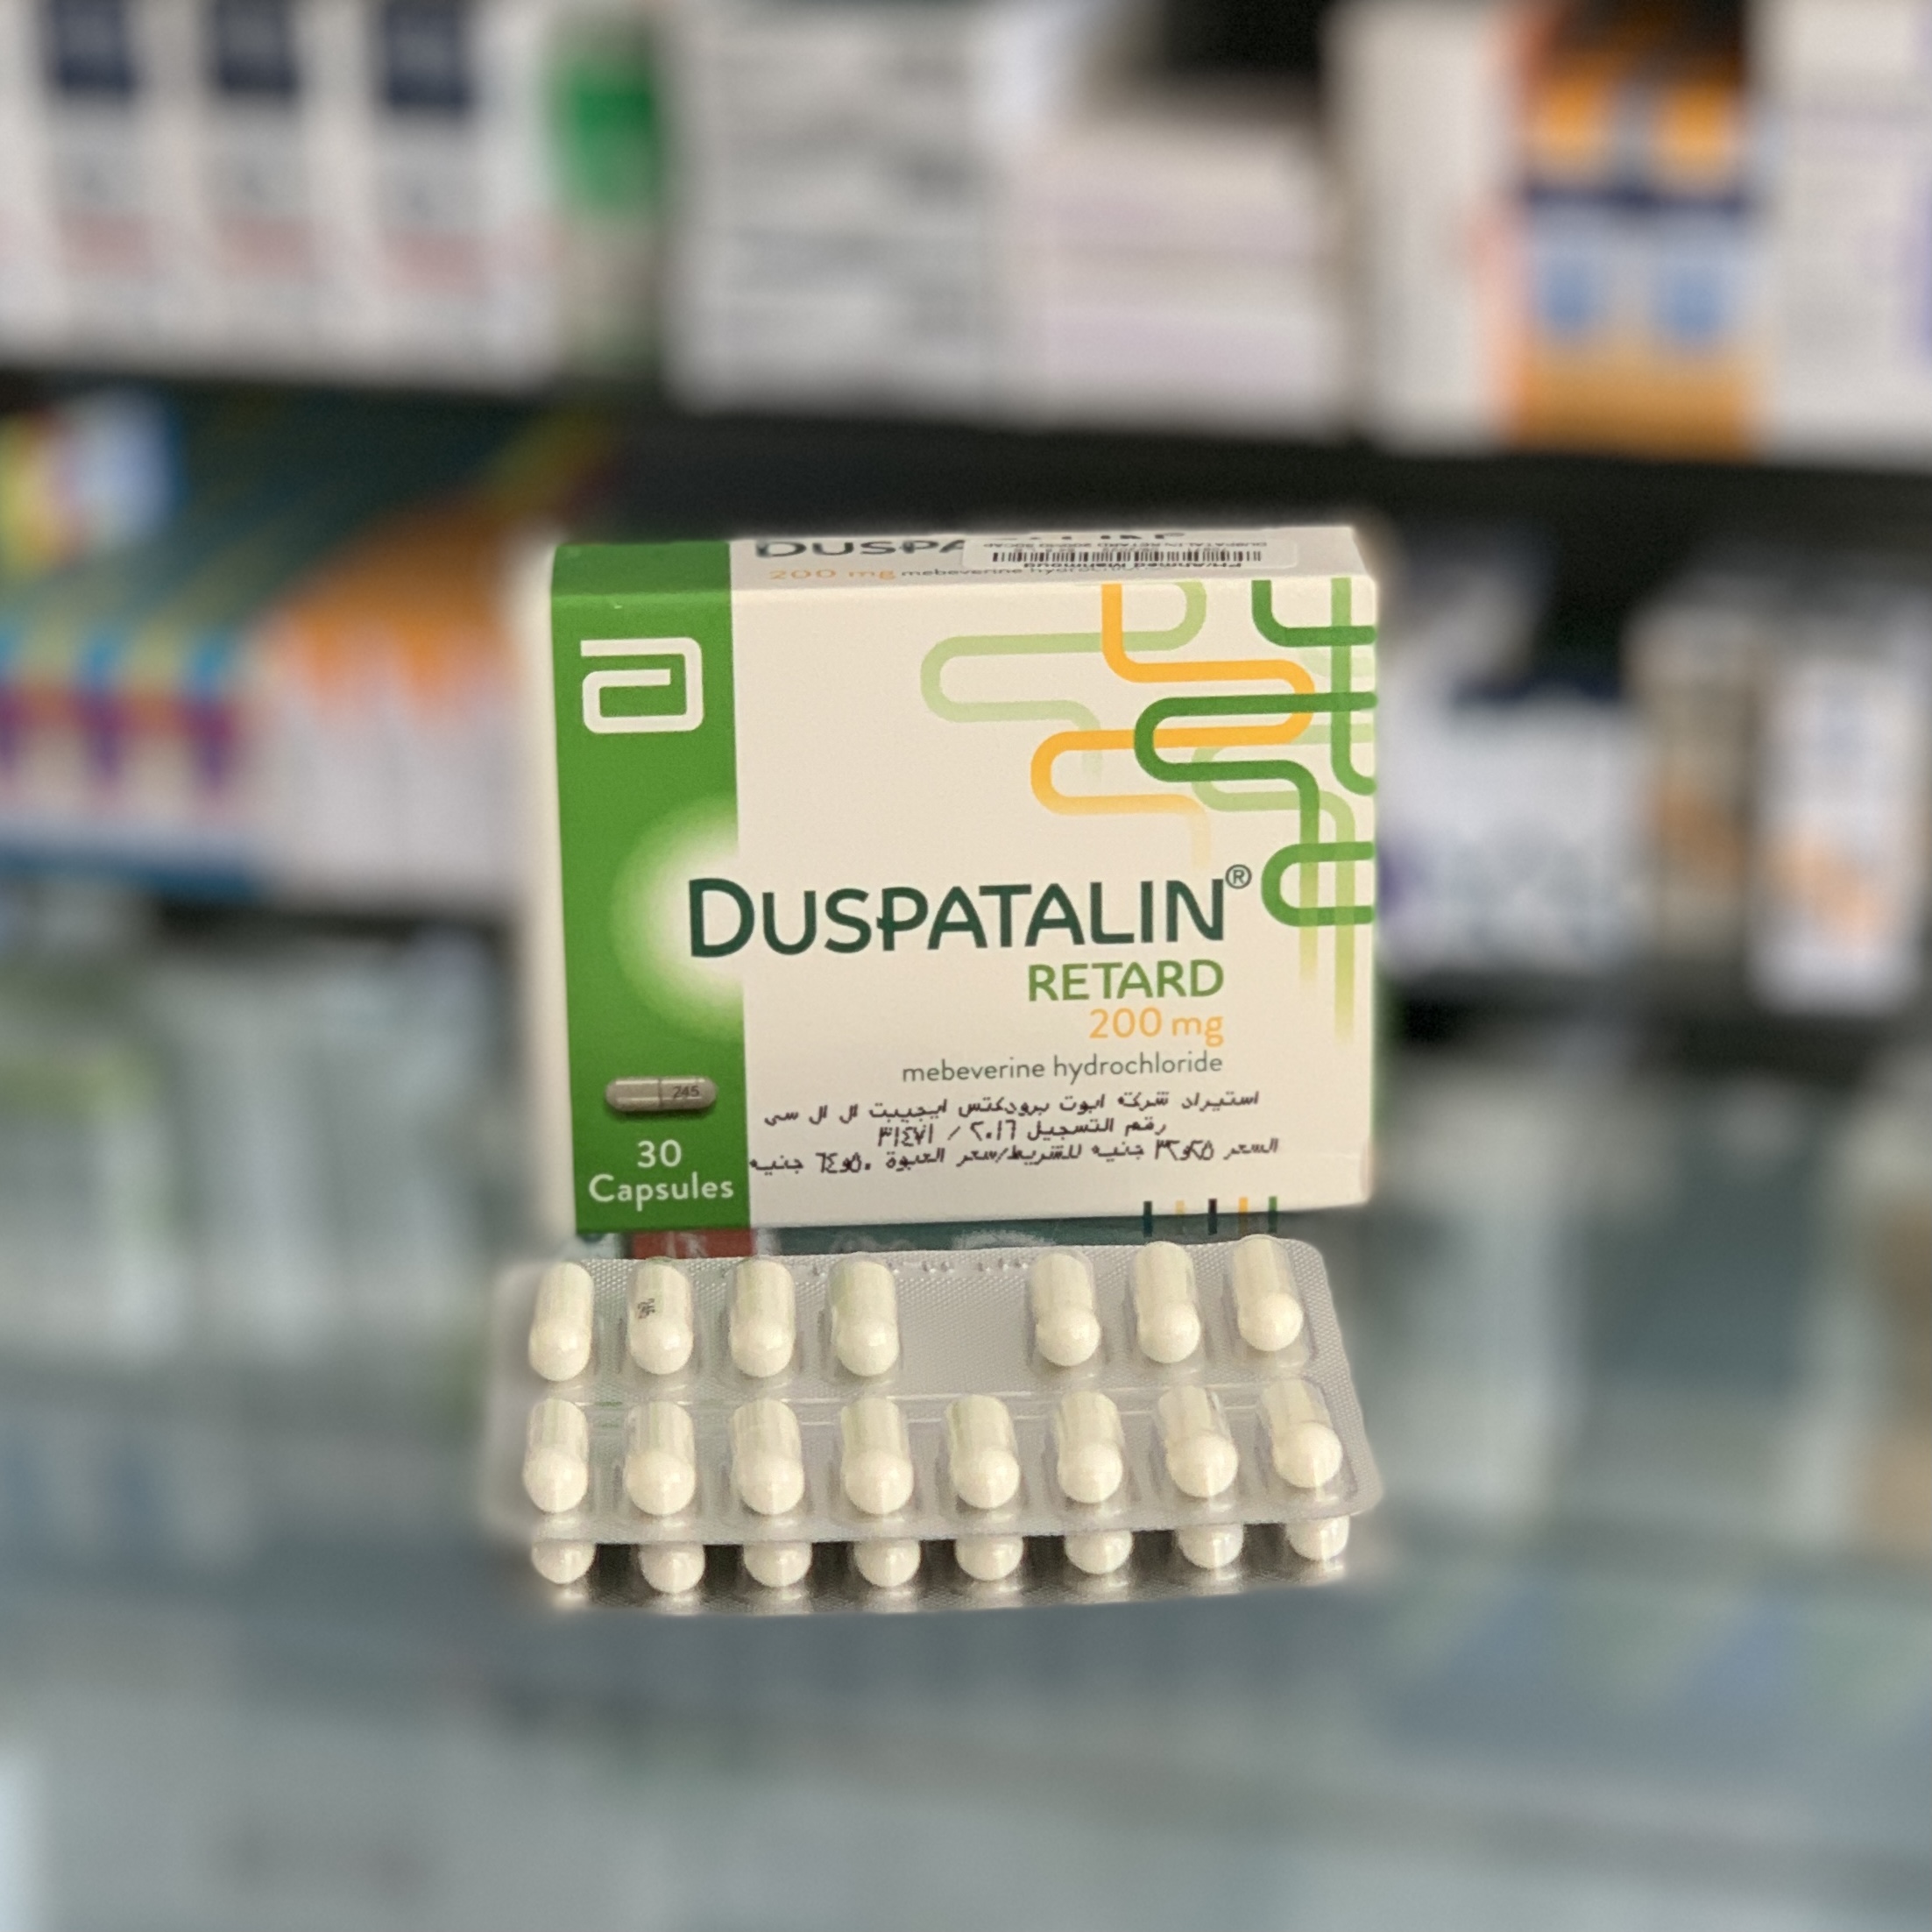 Дюспаталин Ретард 200 мг 30 капсул - Русская аптека в Египте